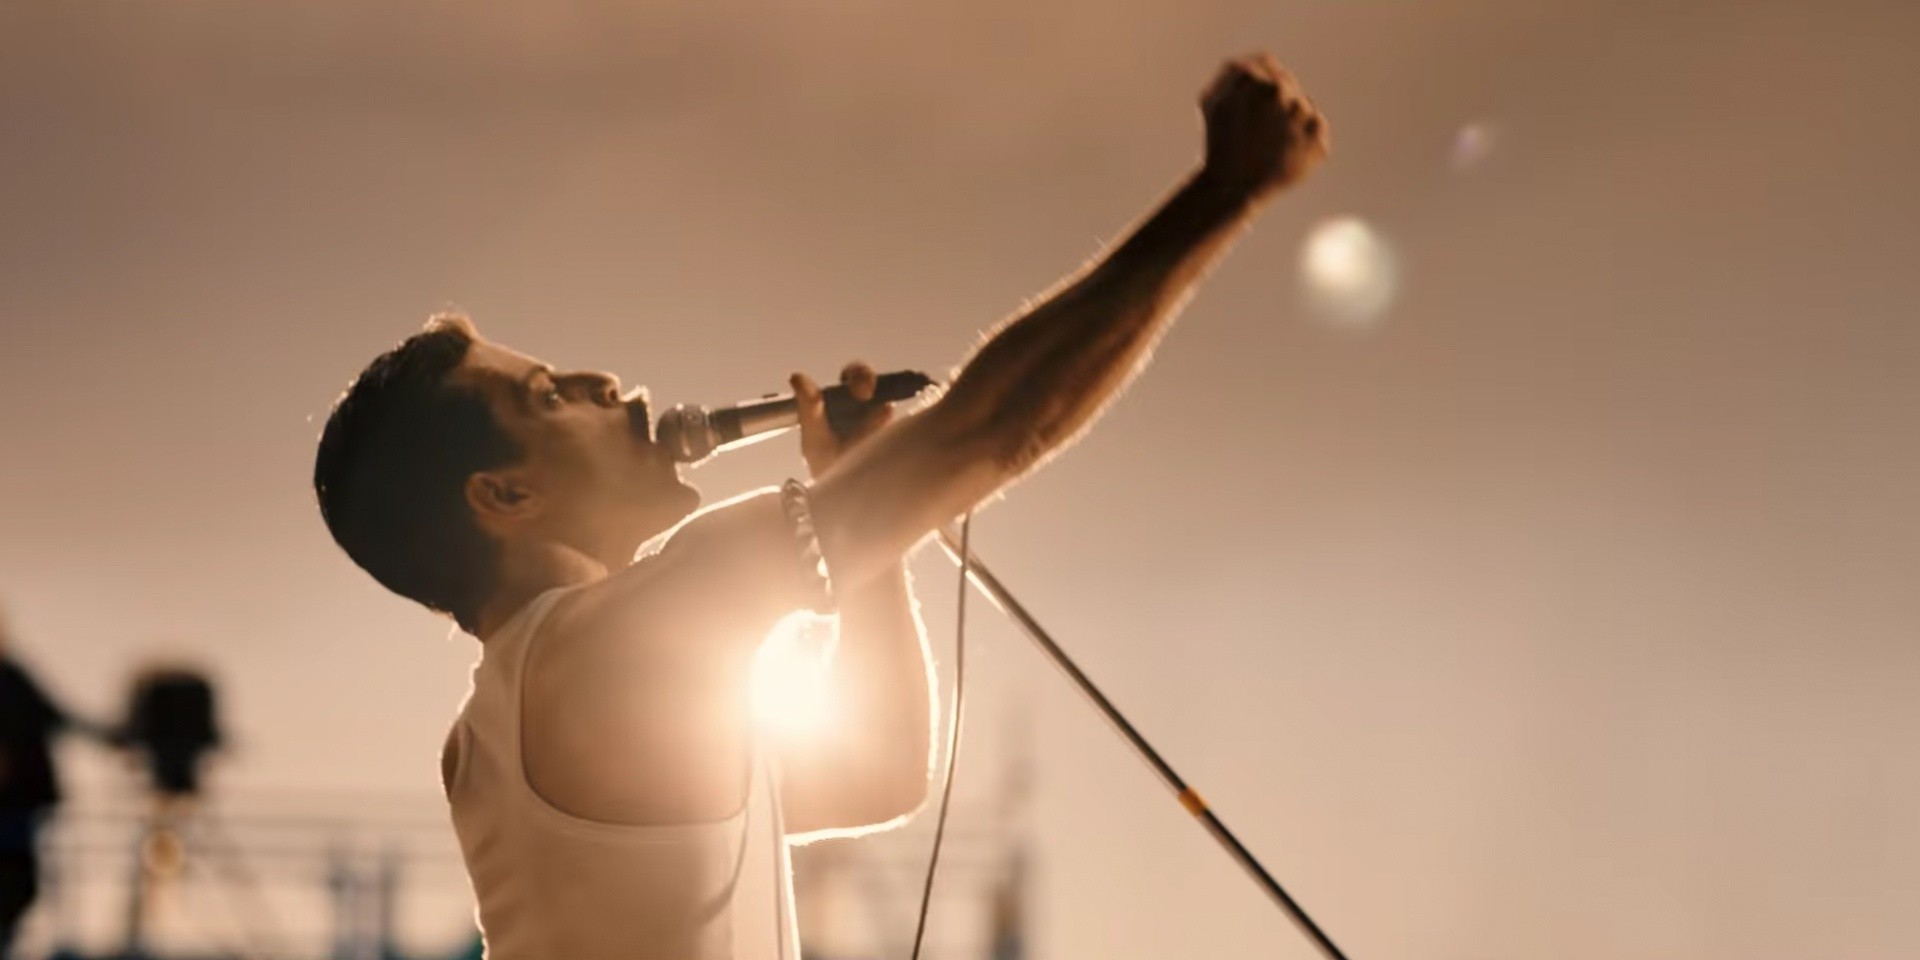 Official trailer of Queen biopic starring Rami Malek as Freddie Mercury released – watch